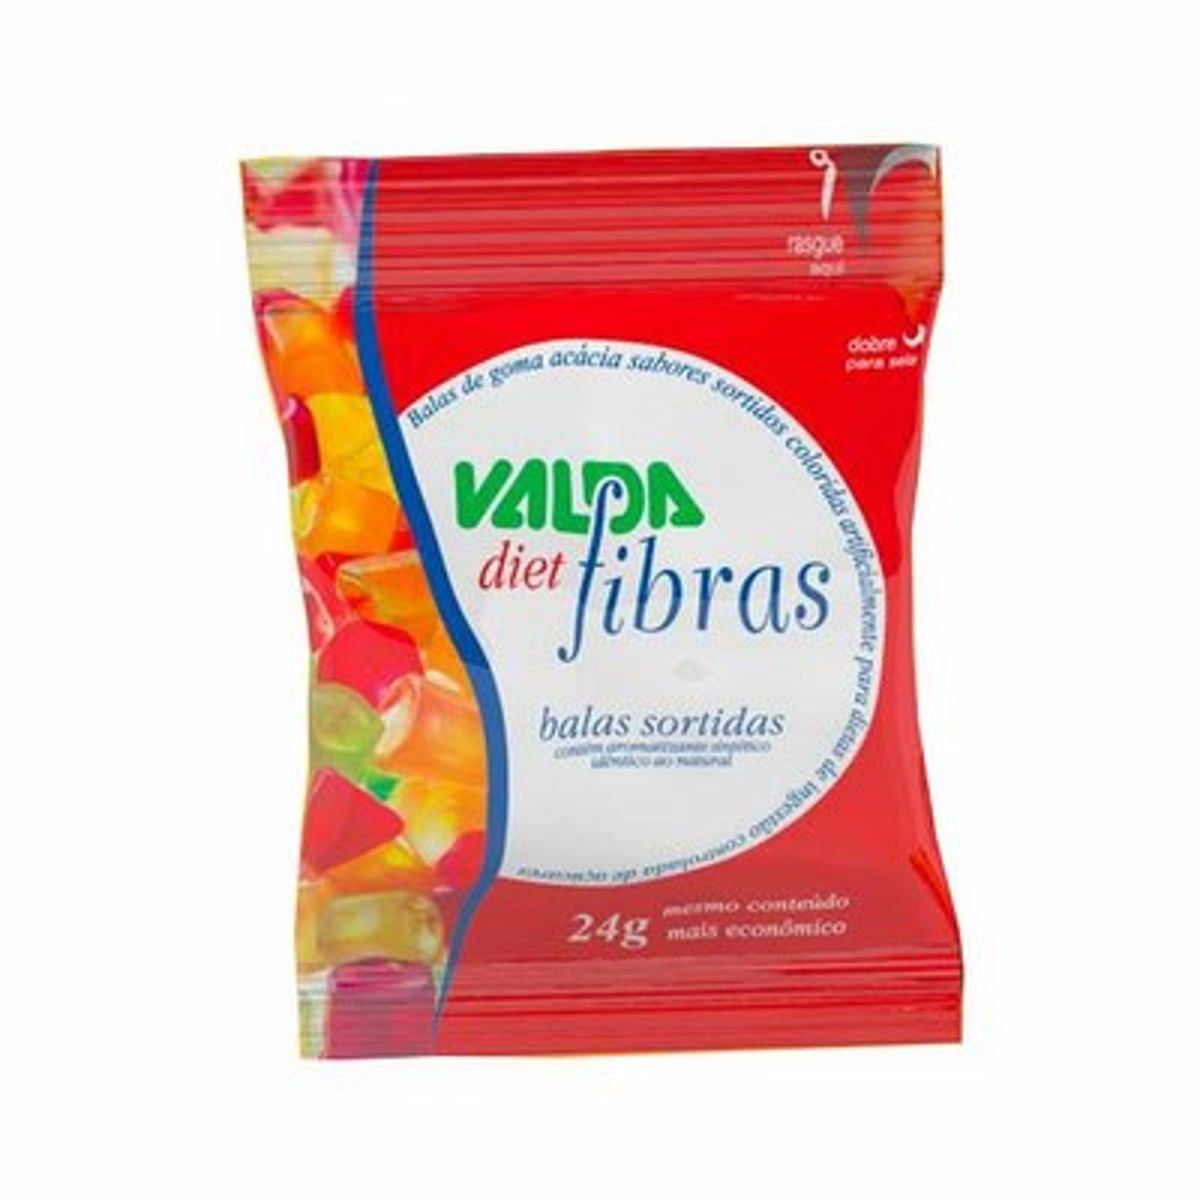 valda-fibras-diet-sachet-de-24g-in-1.jpg